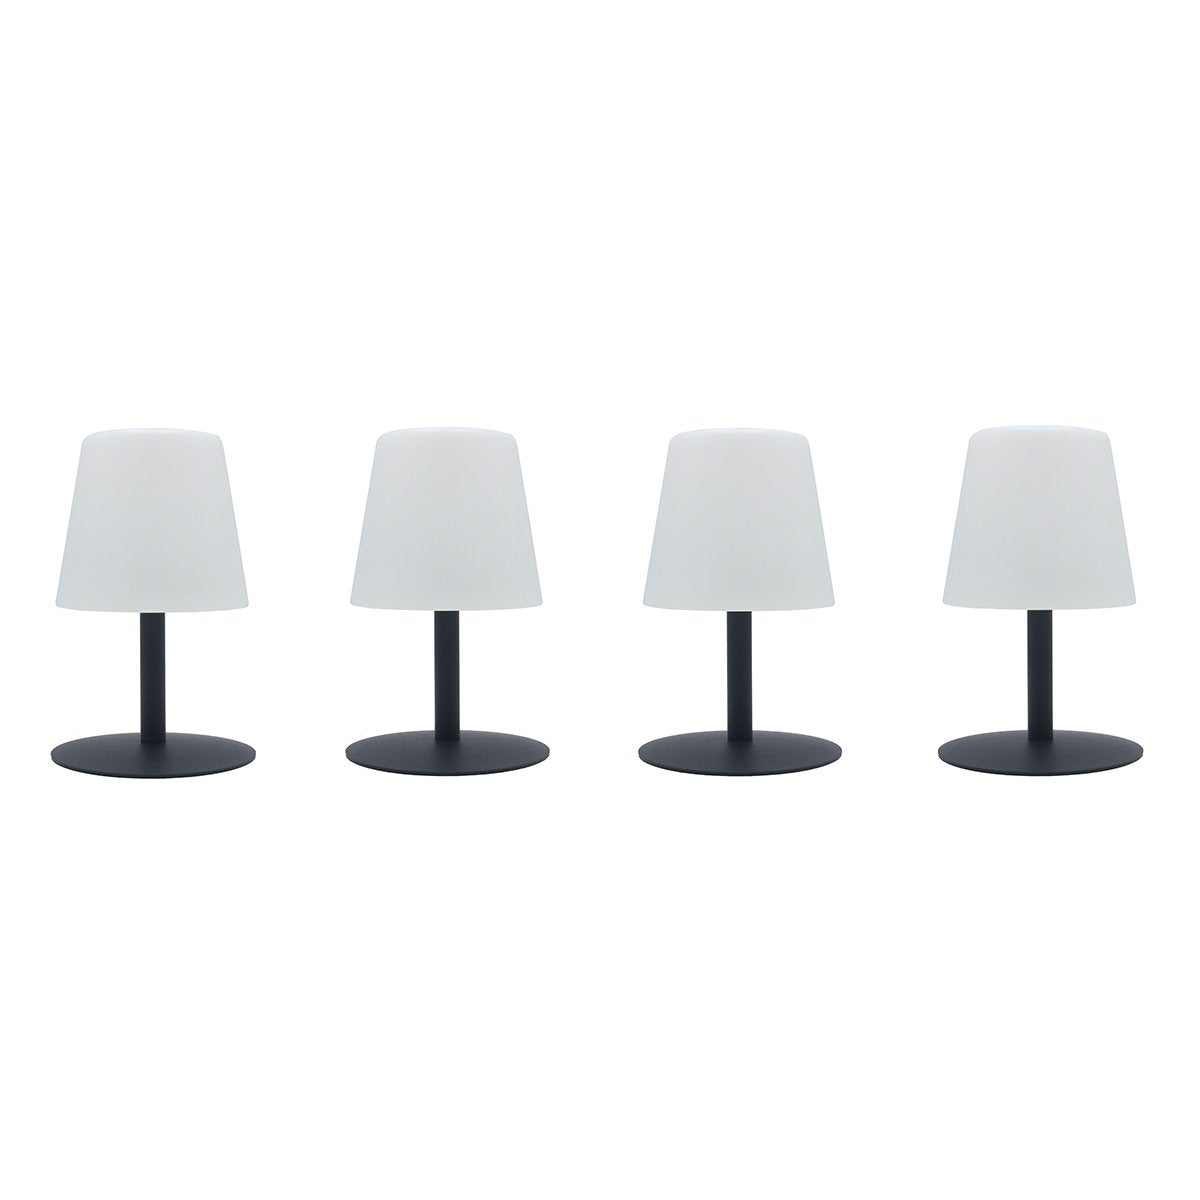 JAZZ lampe pliable LED blanc/gris métal - myunilux